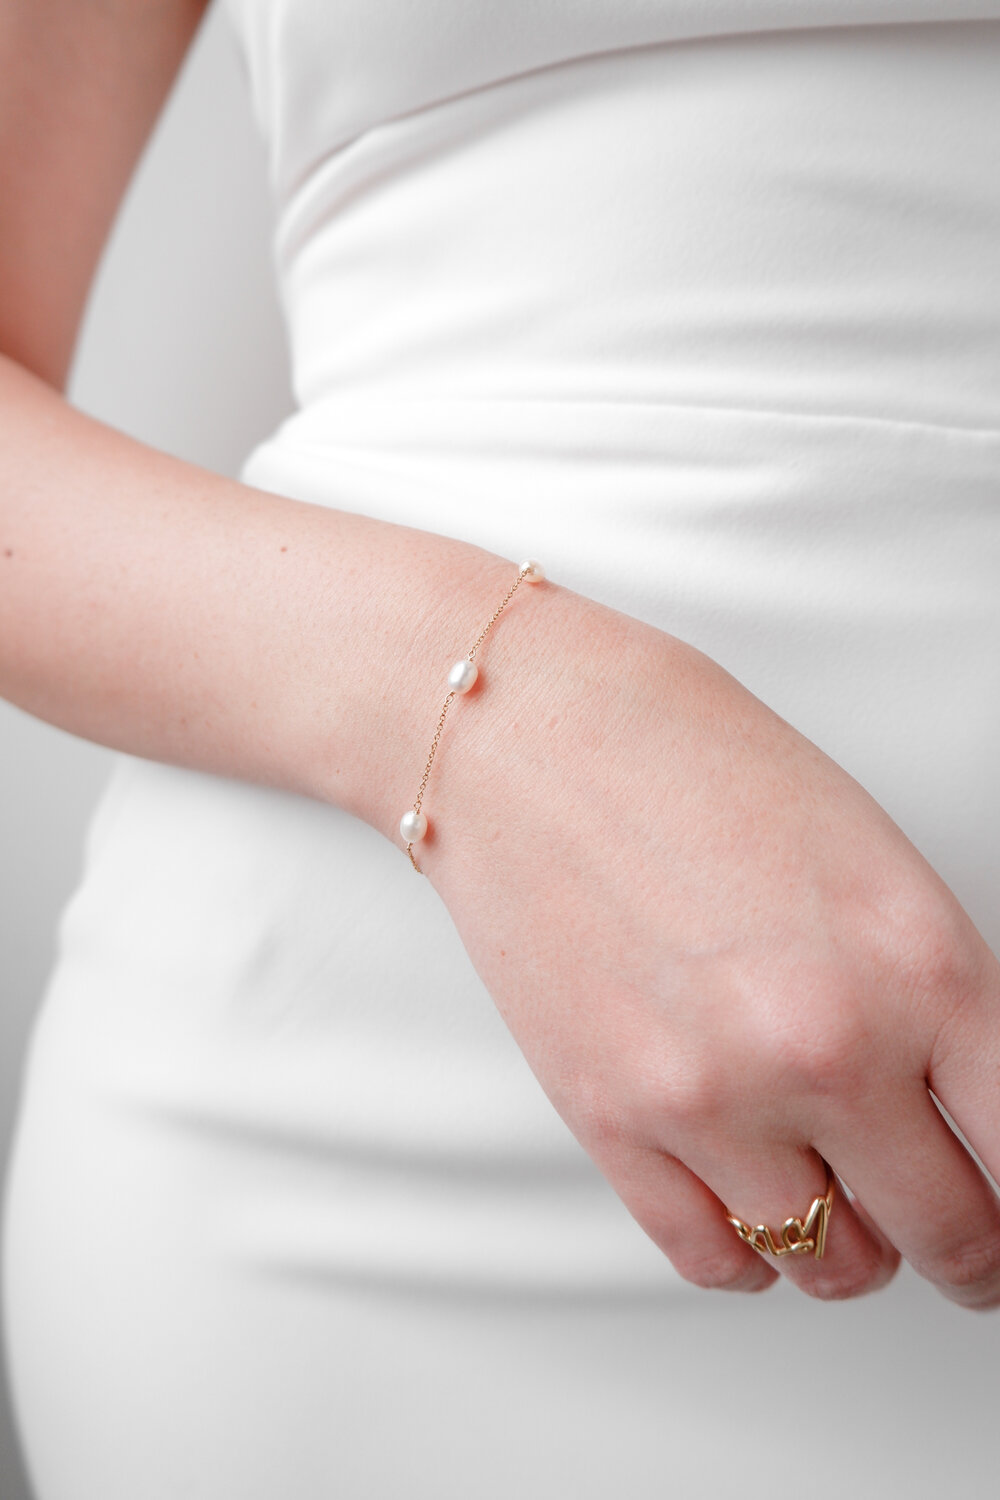 Pearl bracelet Dainty Pearl Bracelet by Atelier Elise — The Modern Bride